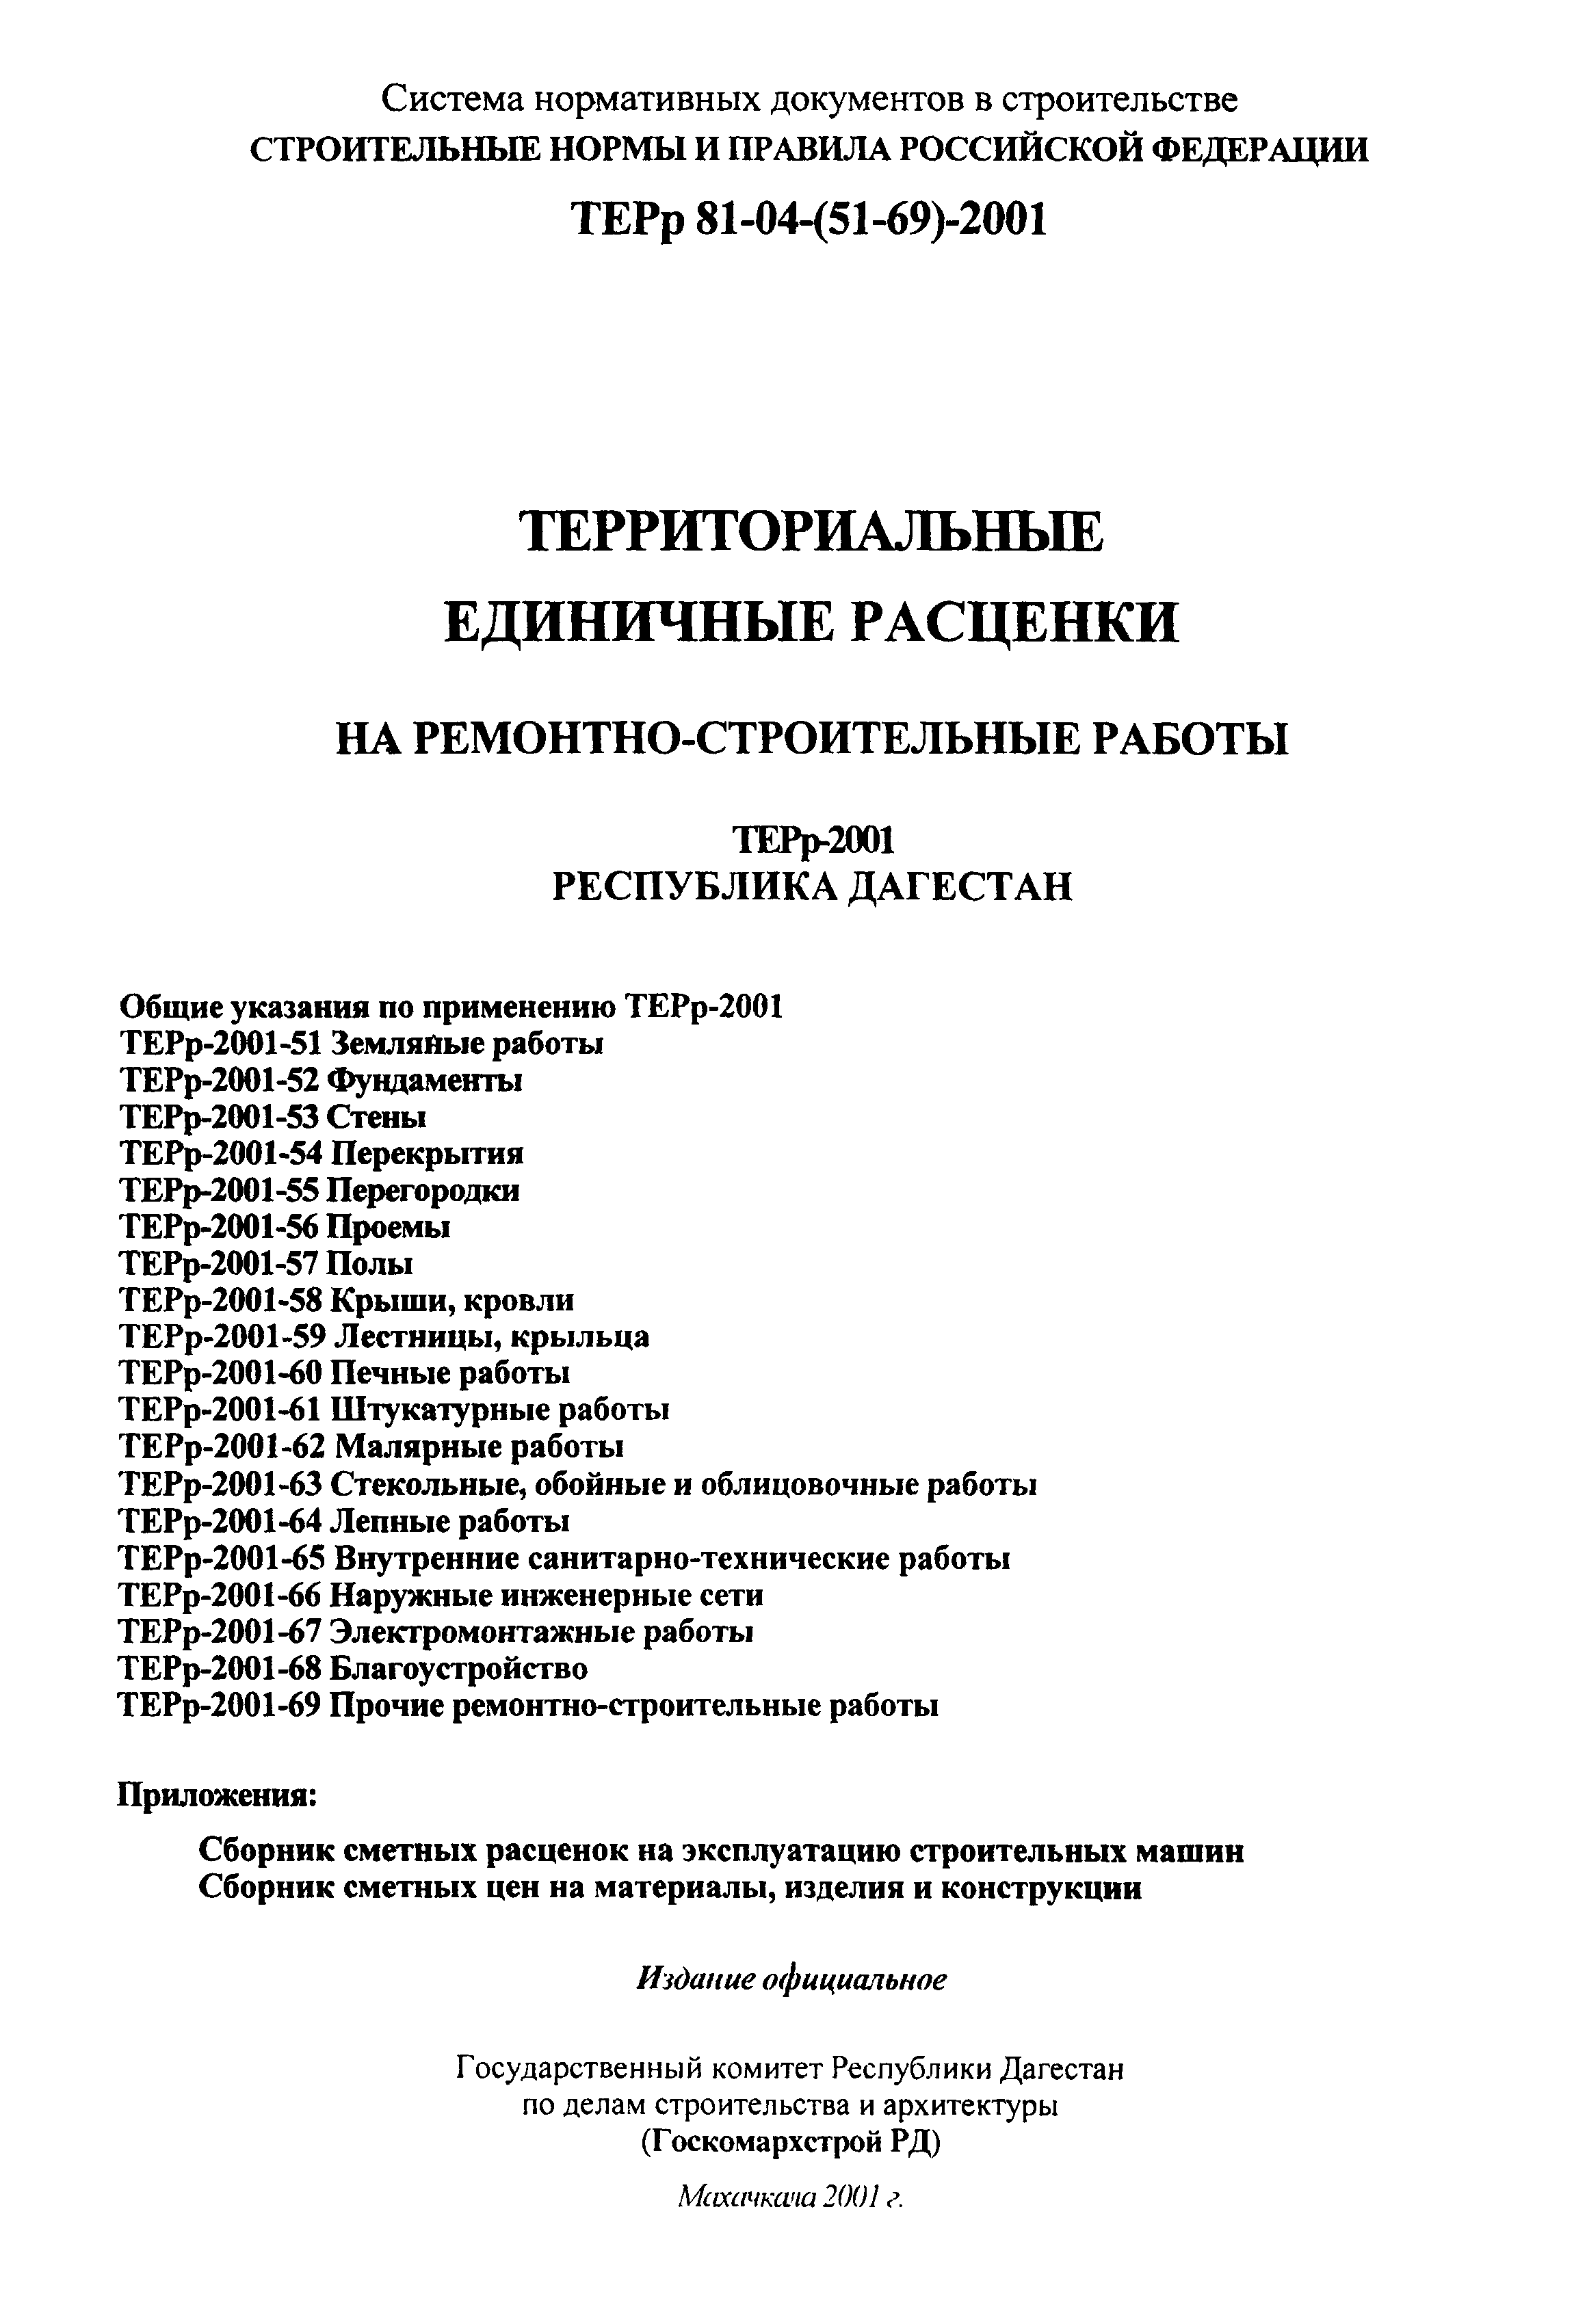 ТЕРр Республика Дагестан 2001-62